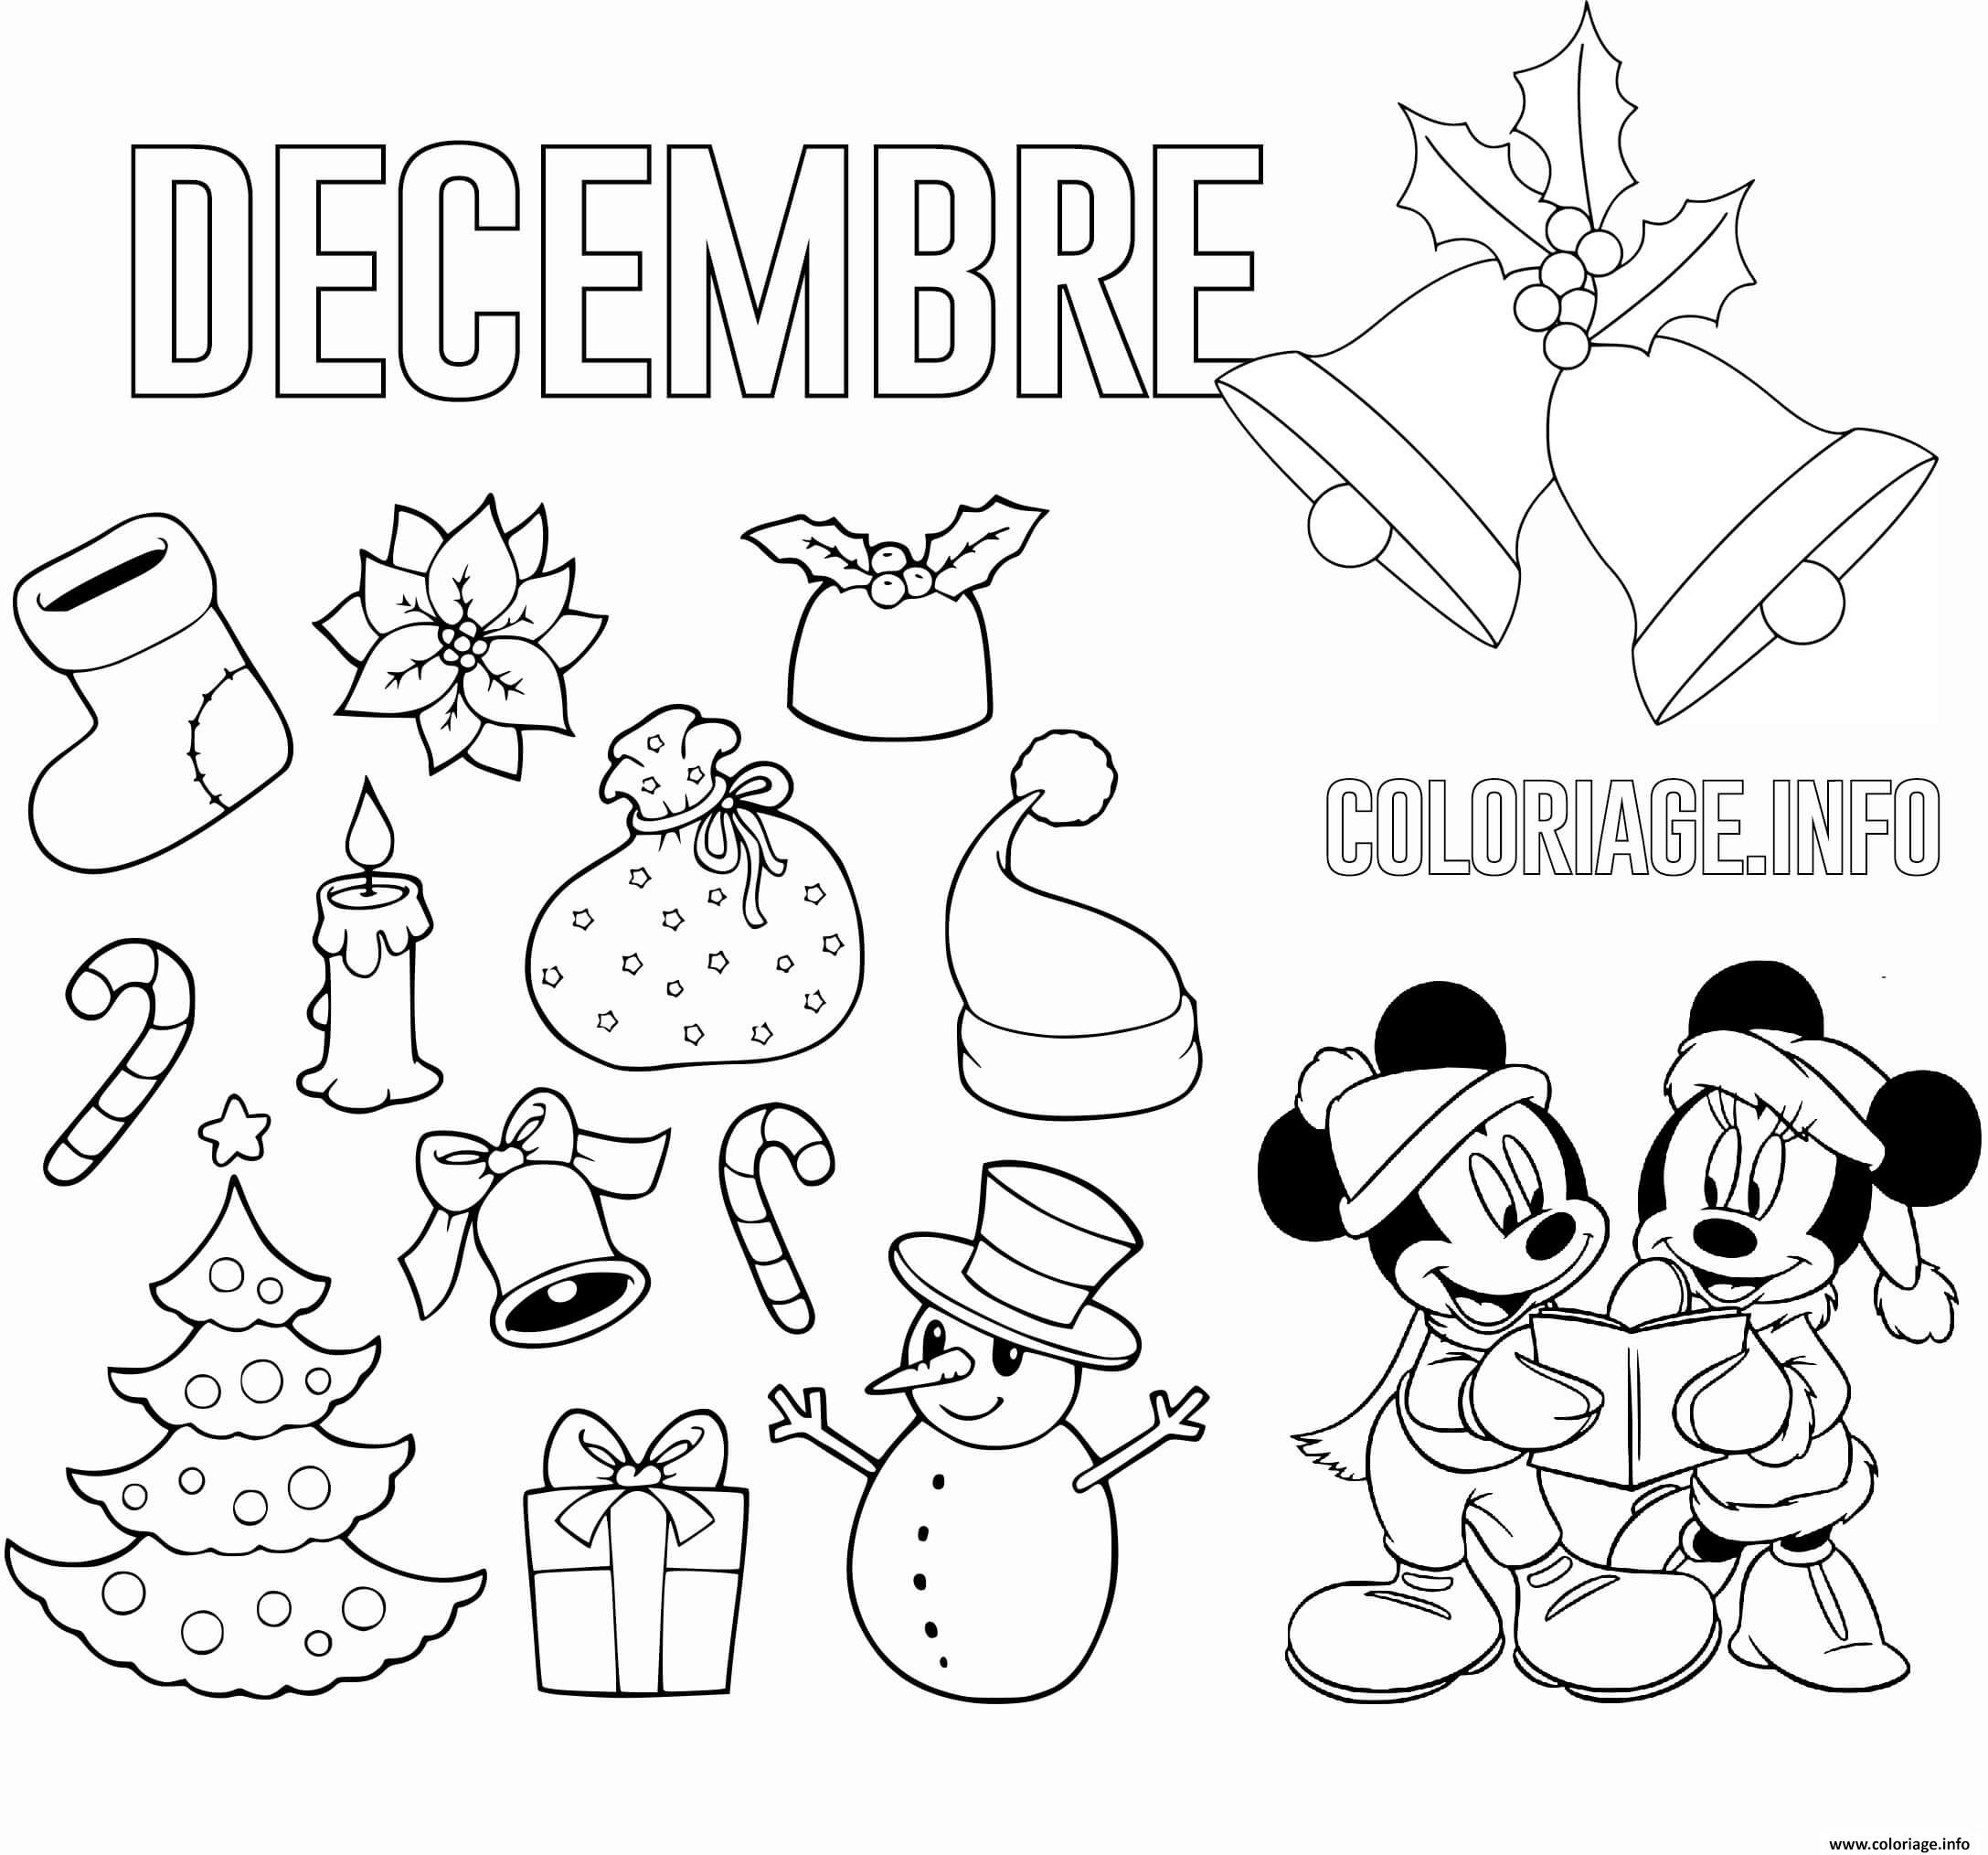 Coloriage Decembre Theme De Noel Maternelle Dessin Noel A Imprimer